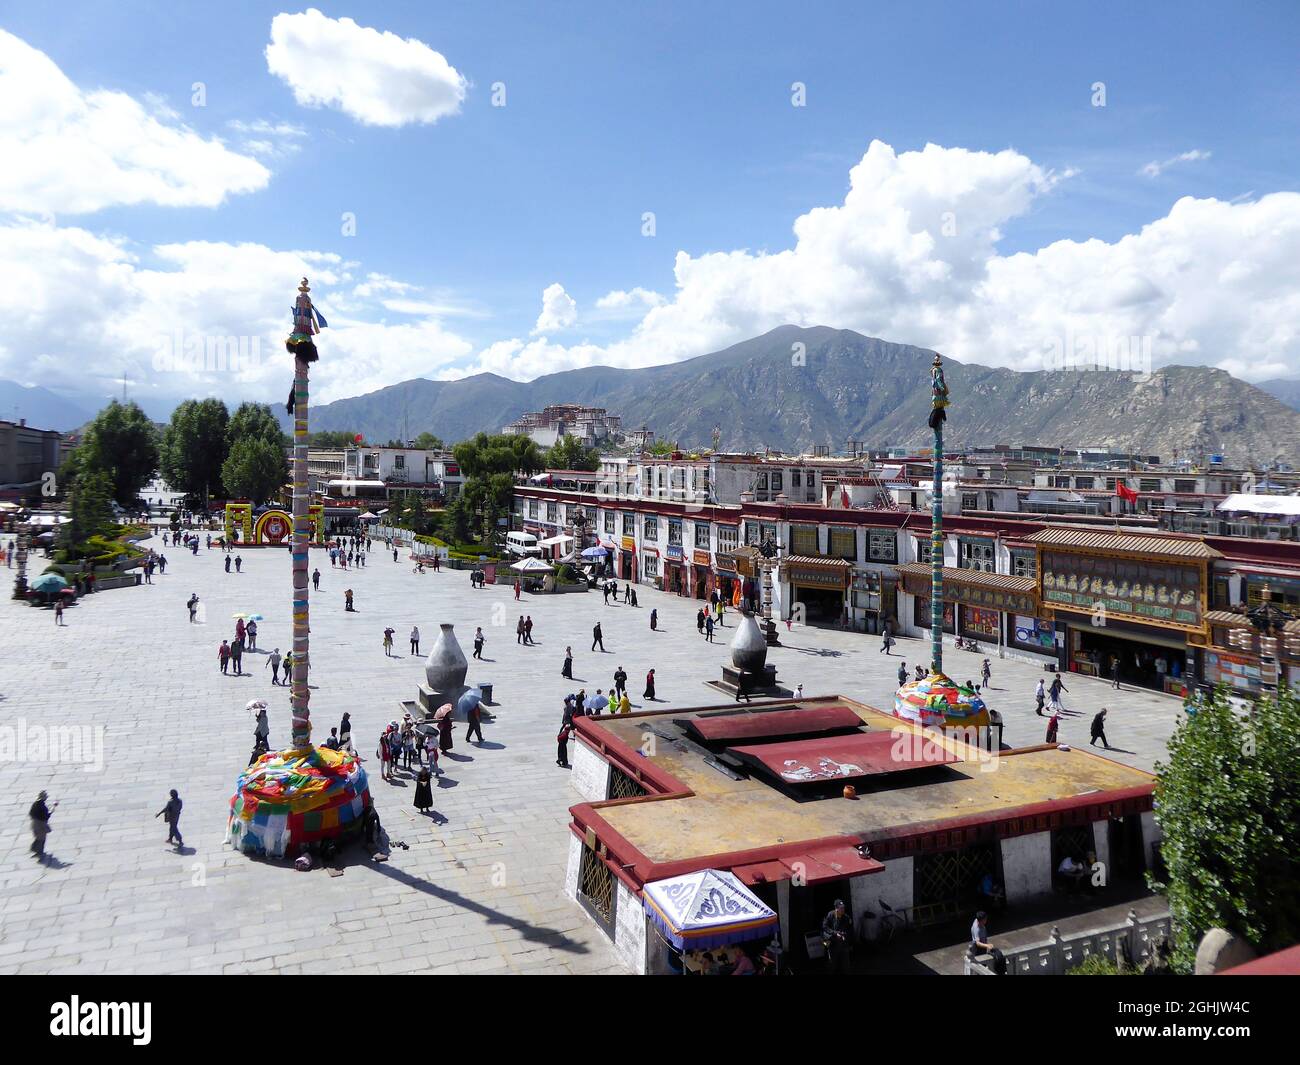 Blick auf den Barkhor-Platz vom Dach des Jokhang-Klosters, mit dem Potala-Palast in der Ferne, Lhasa, Tibet - Aug 2014 Stockfoto